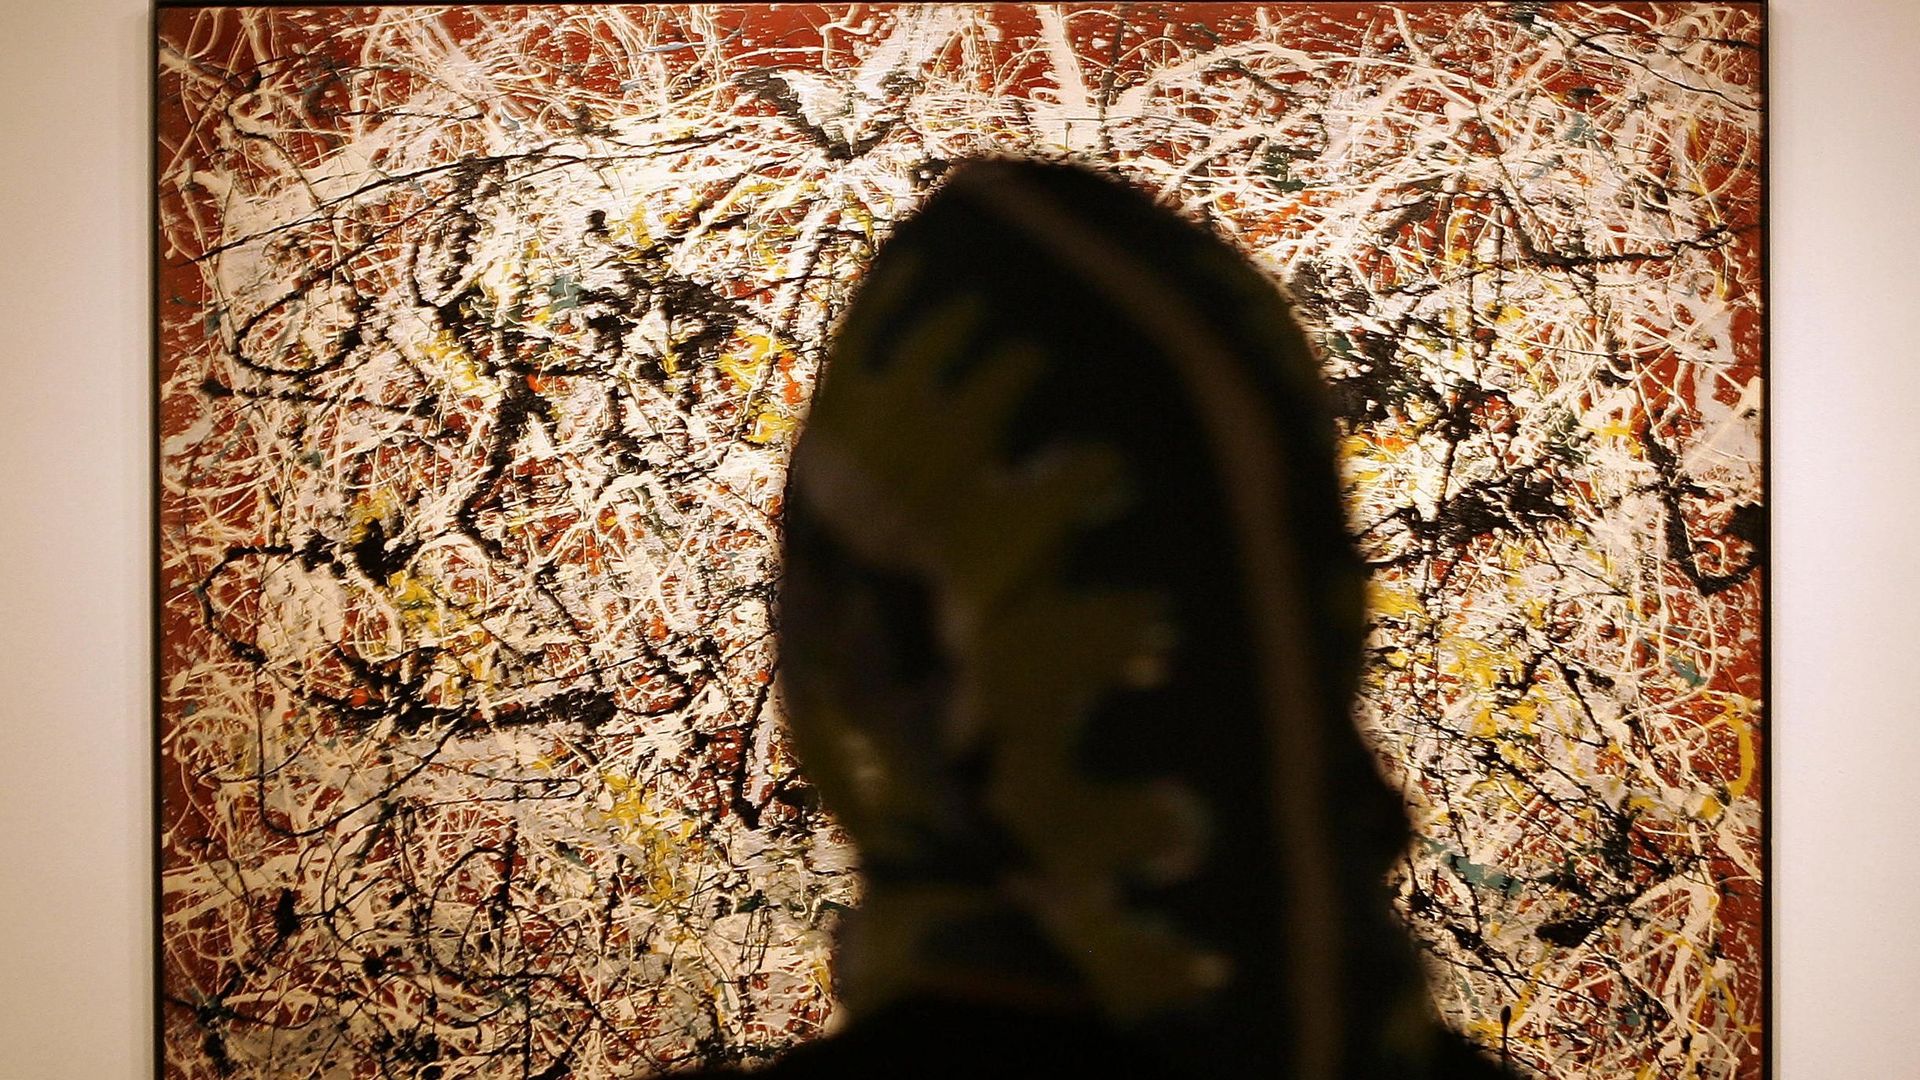 Le musée carioca espère obtenir 25 millions de dollars en cédant "No.16", une toile de Pollock qui lui avait été donnée en 1954 par Nelson Rockfeller